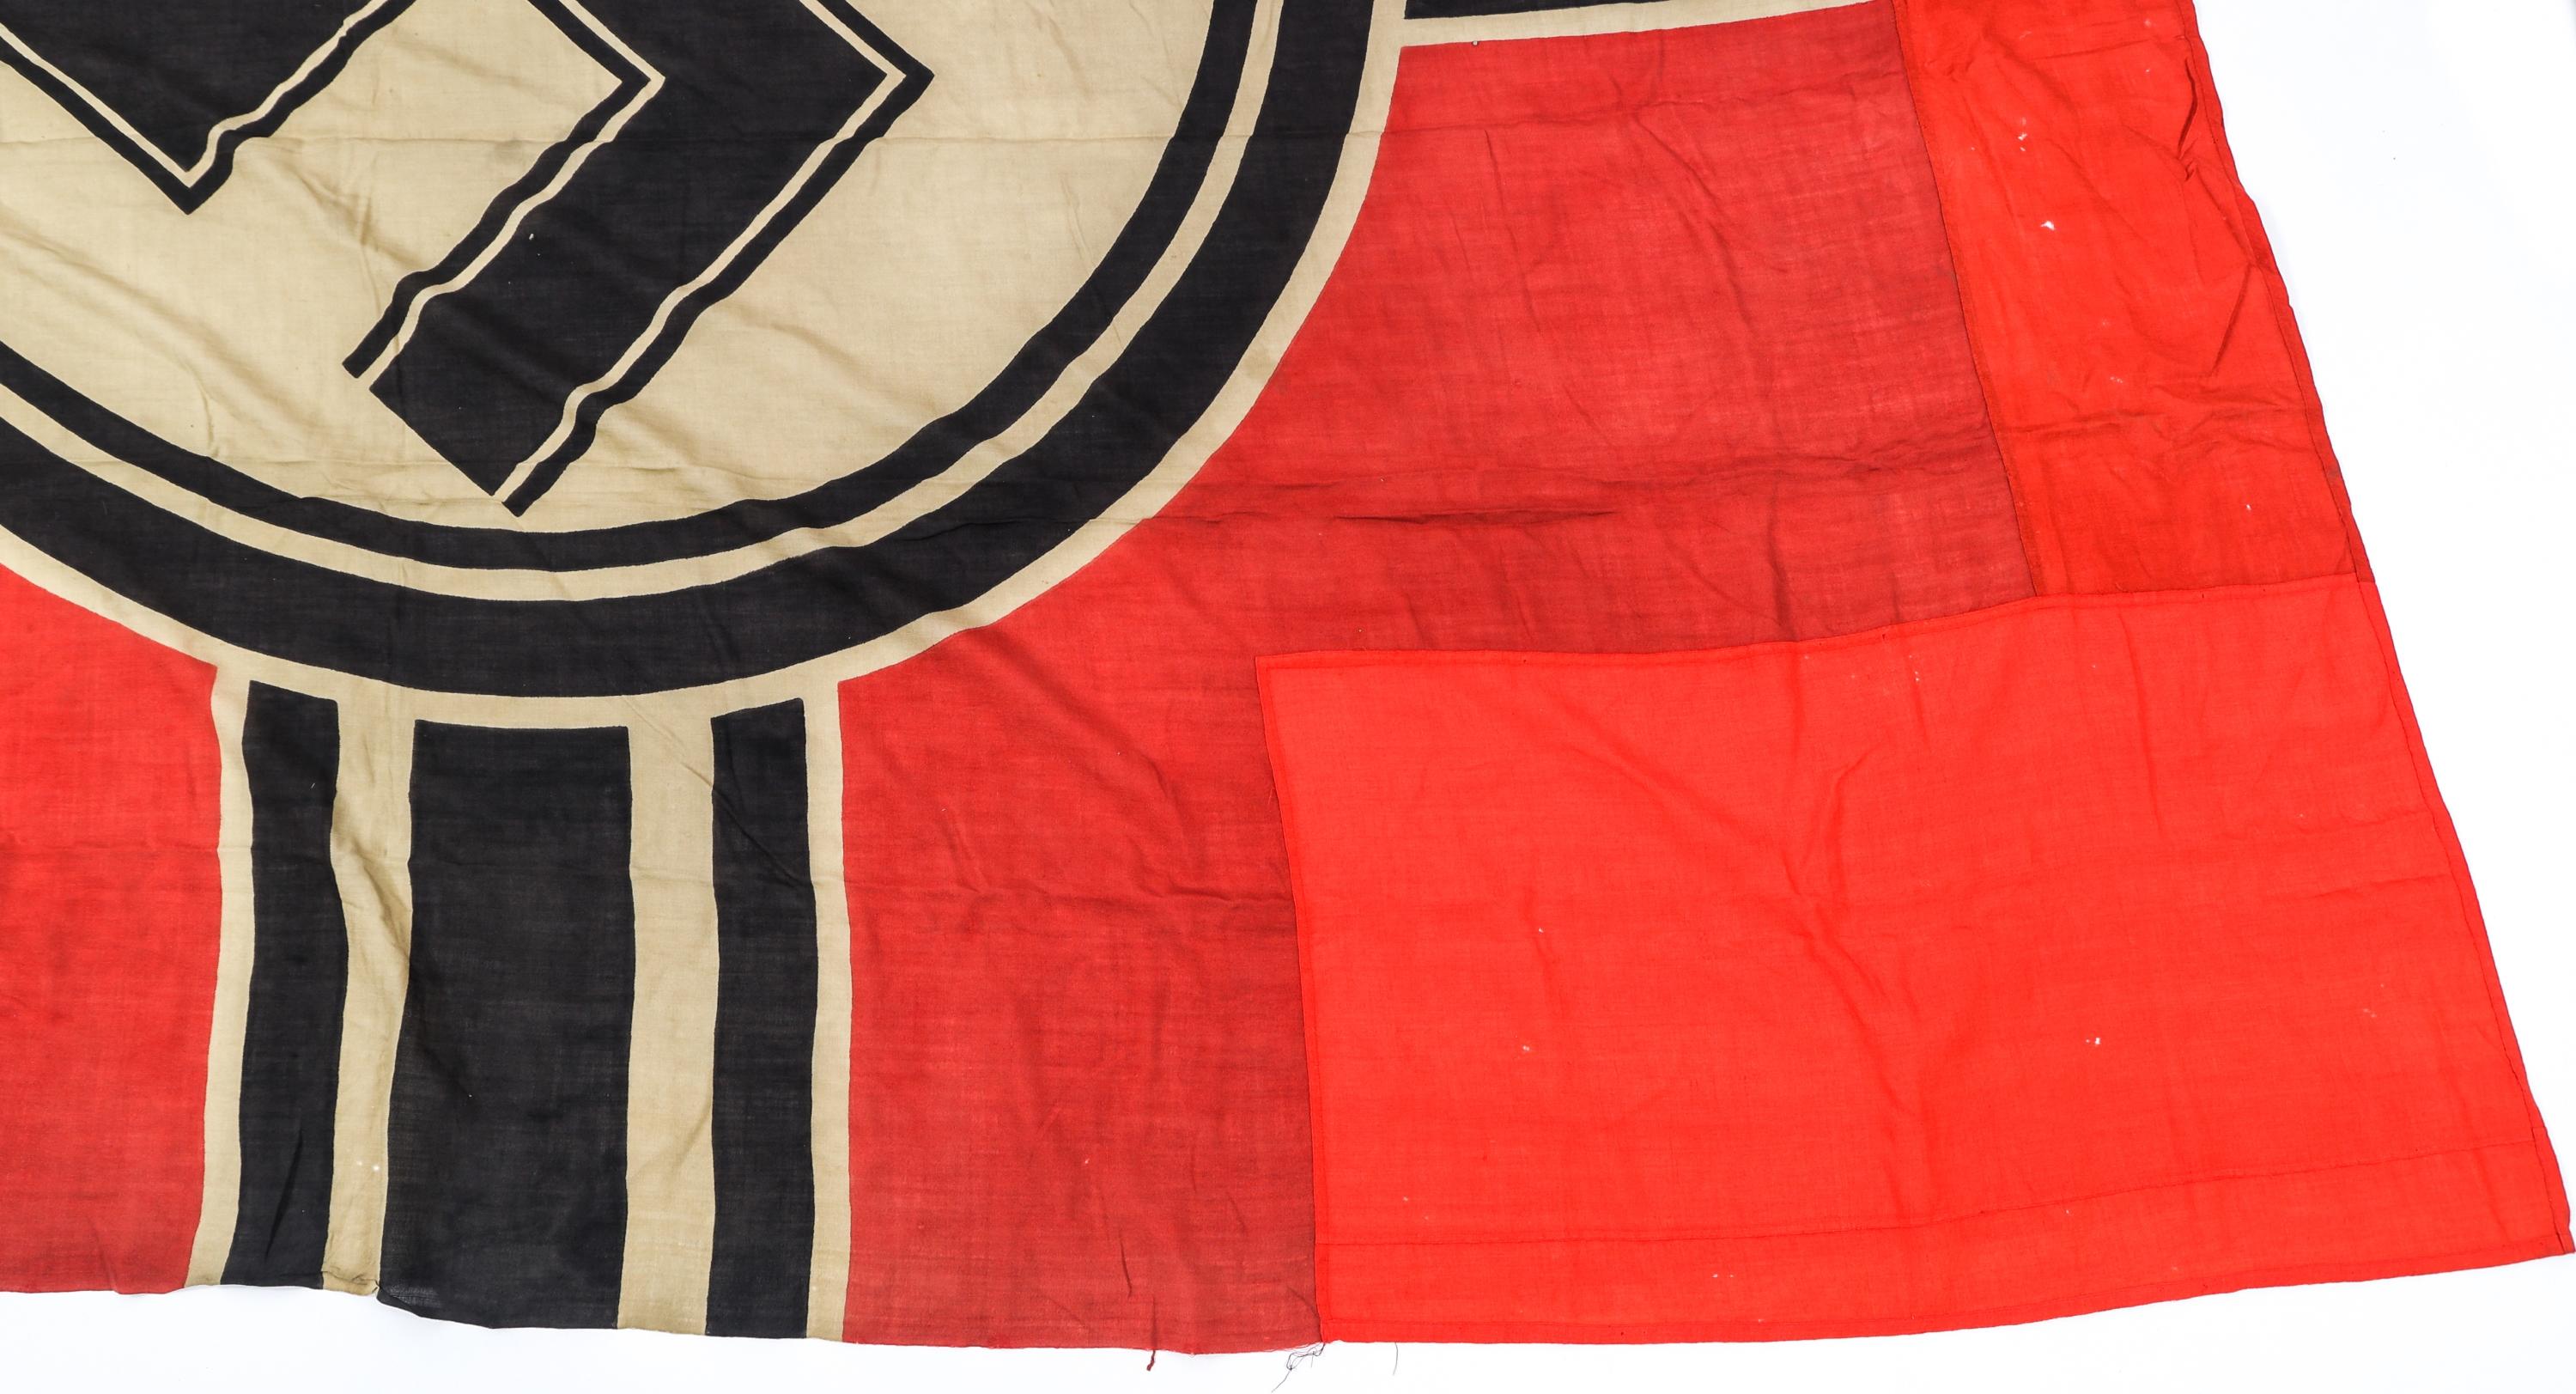 WWII GERMAN KRIEGSMARINE DESTROYER BATTLE FLAG